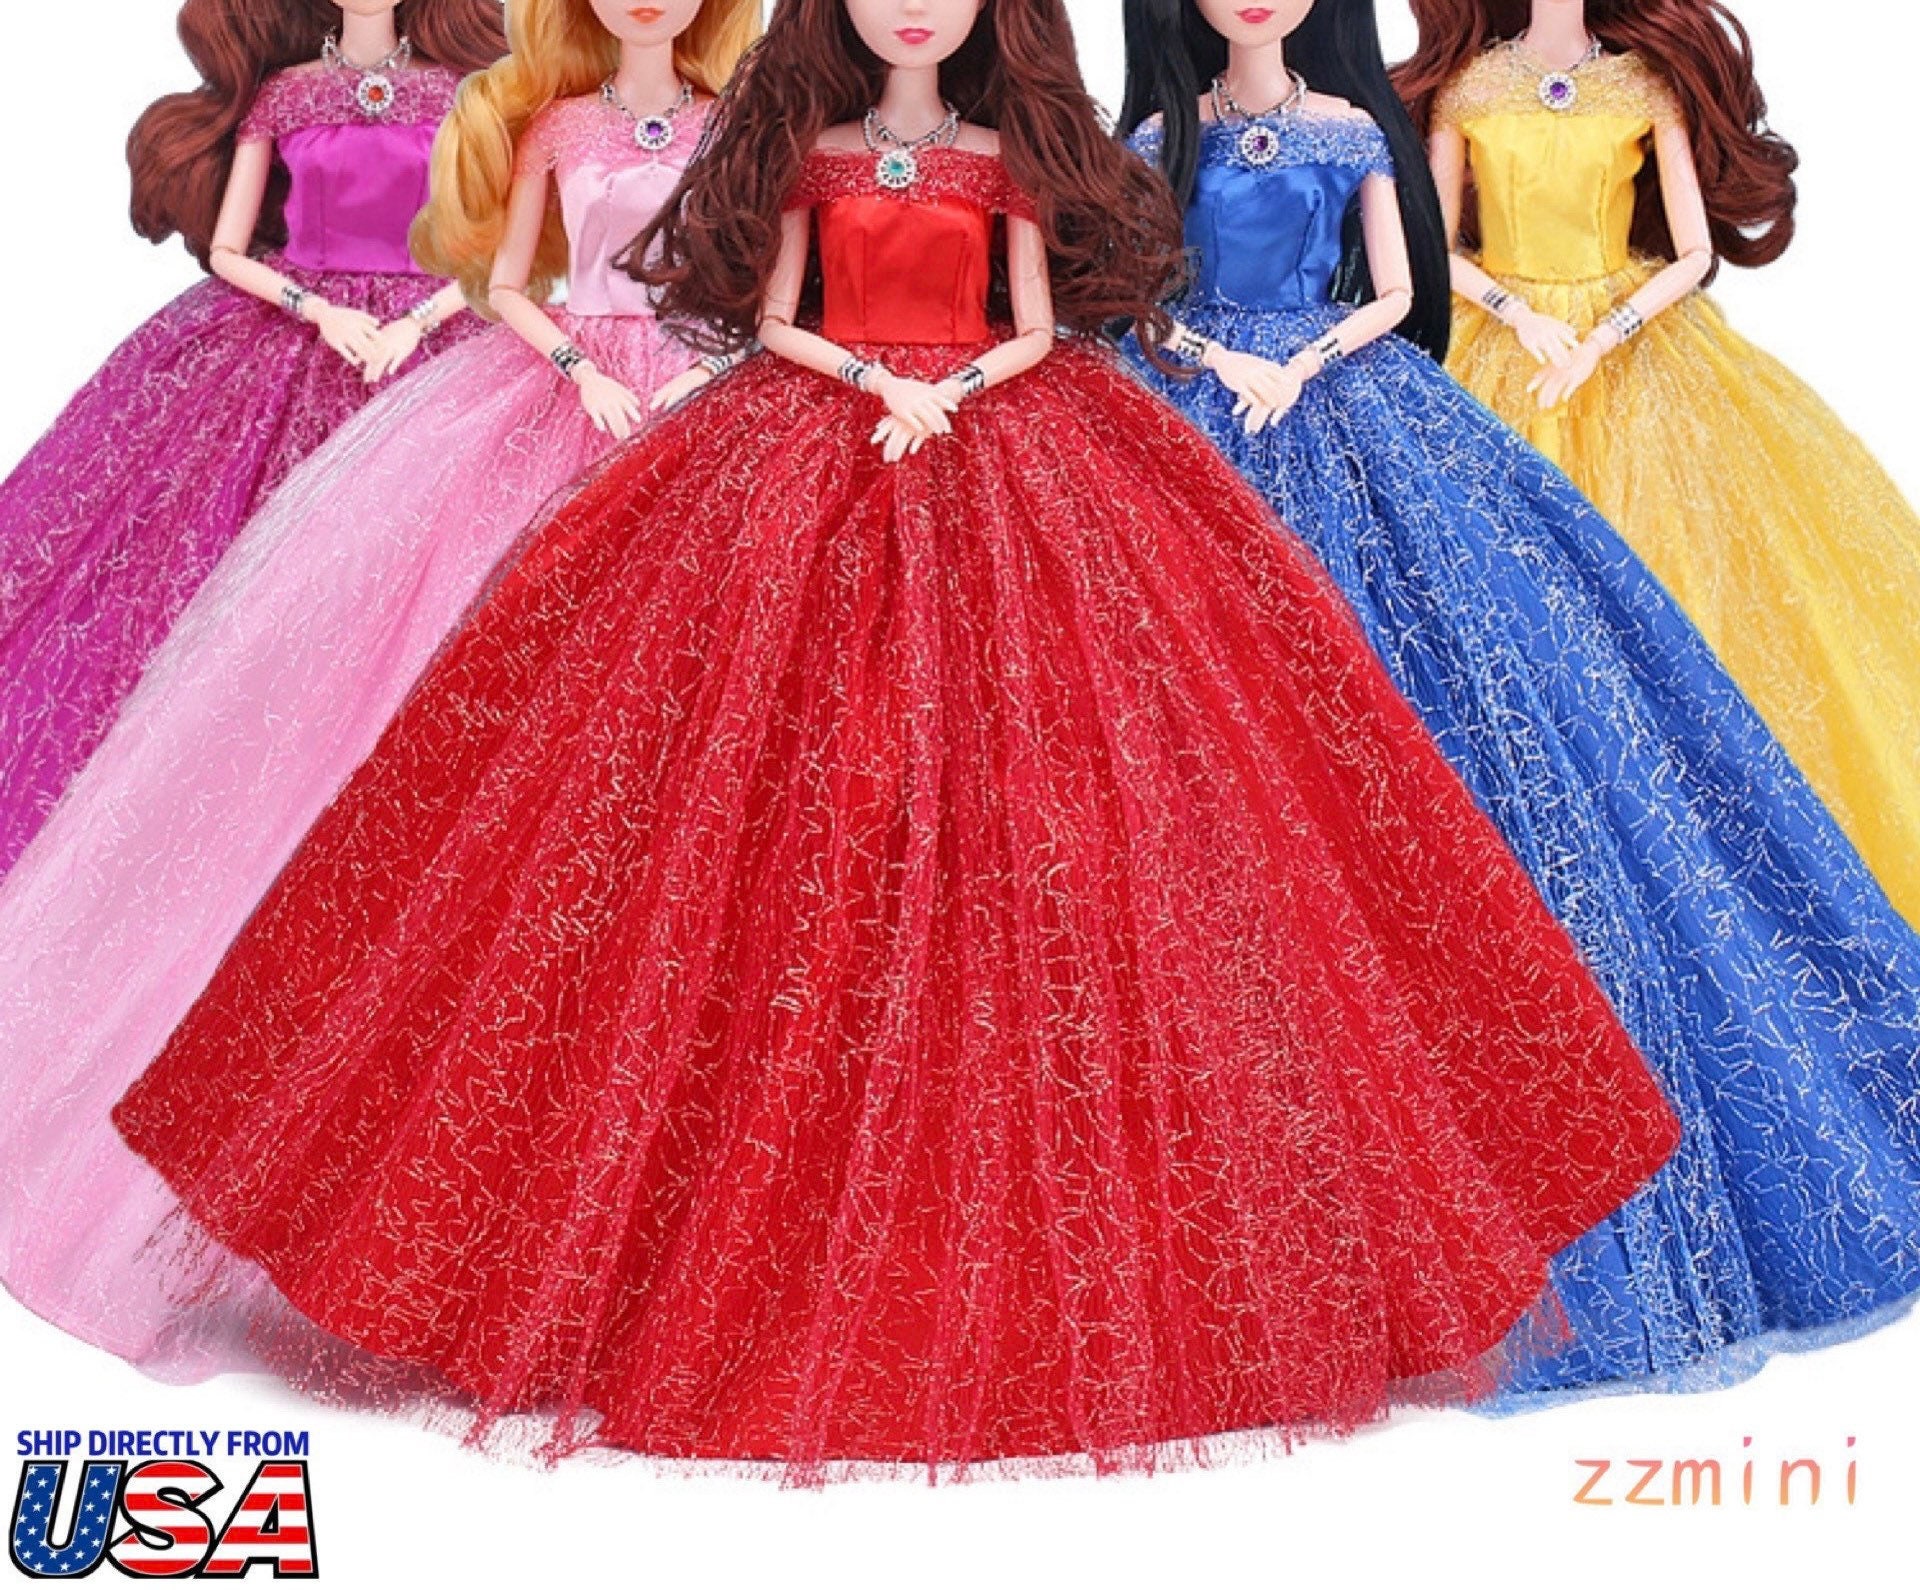 American Girl Anne Boleyn Doll Dress – CARPATINA DOLLS